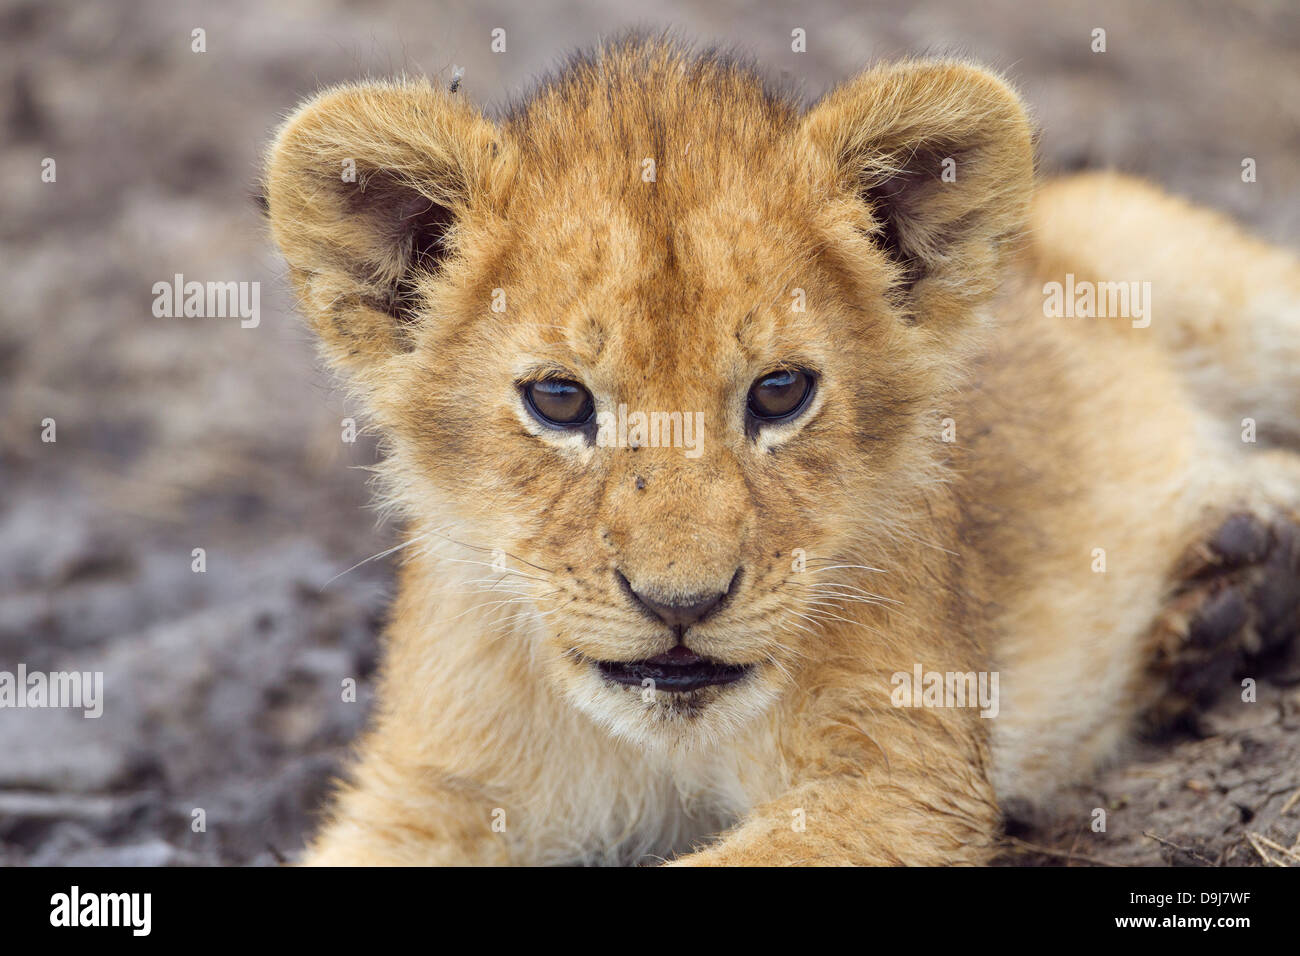 Lion cub close-up, Masai Mara, Kenya Banque D'Images